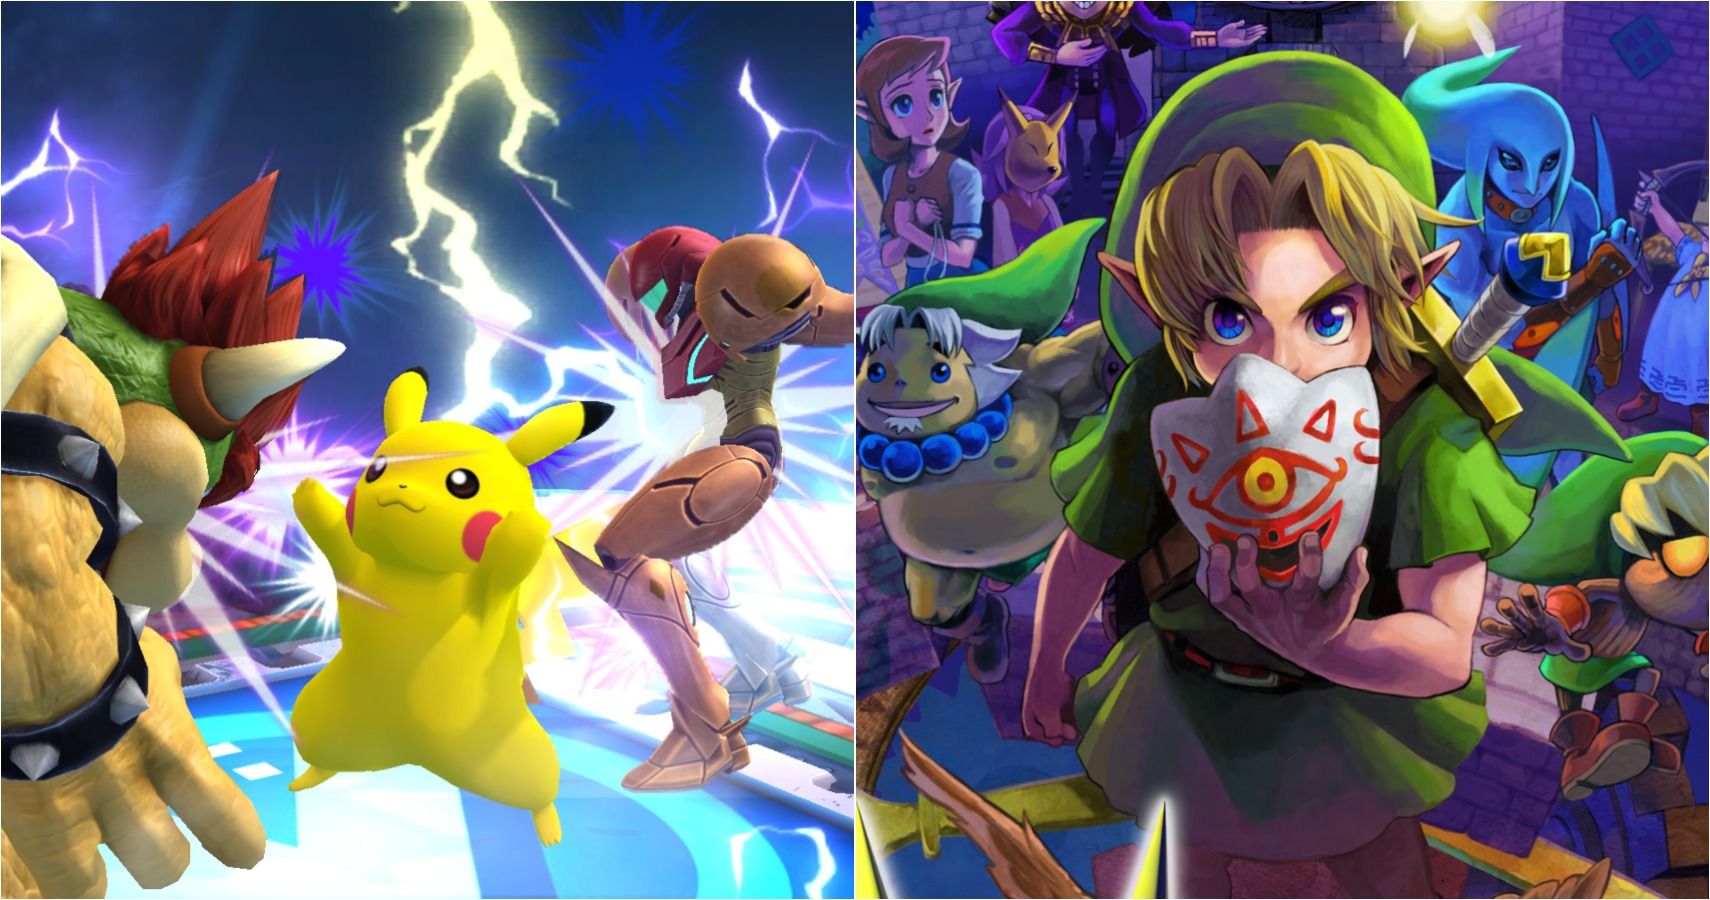 The Legend of Zelda: Majora's Mask - Metacritic